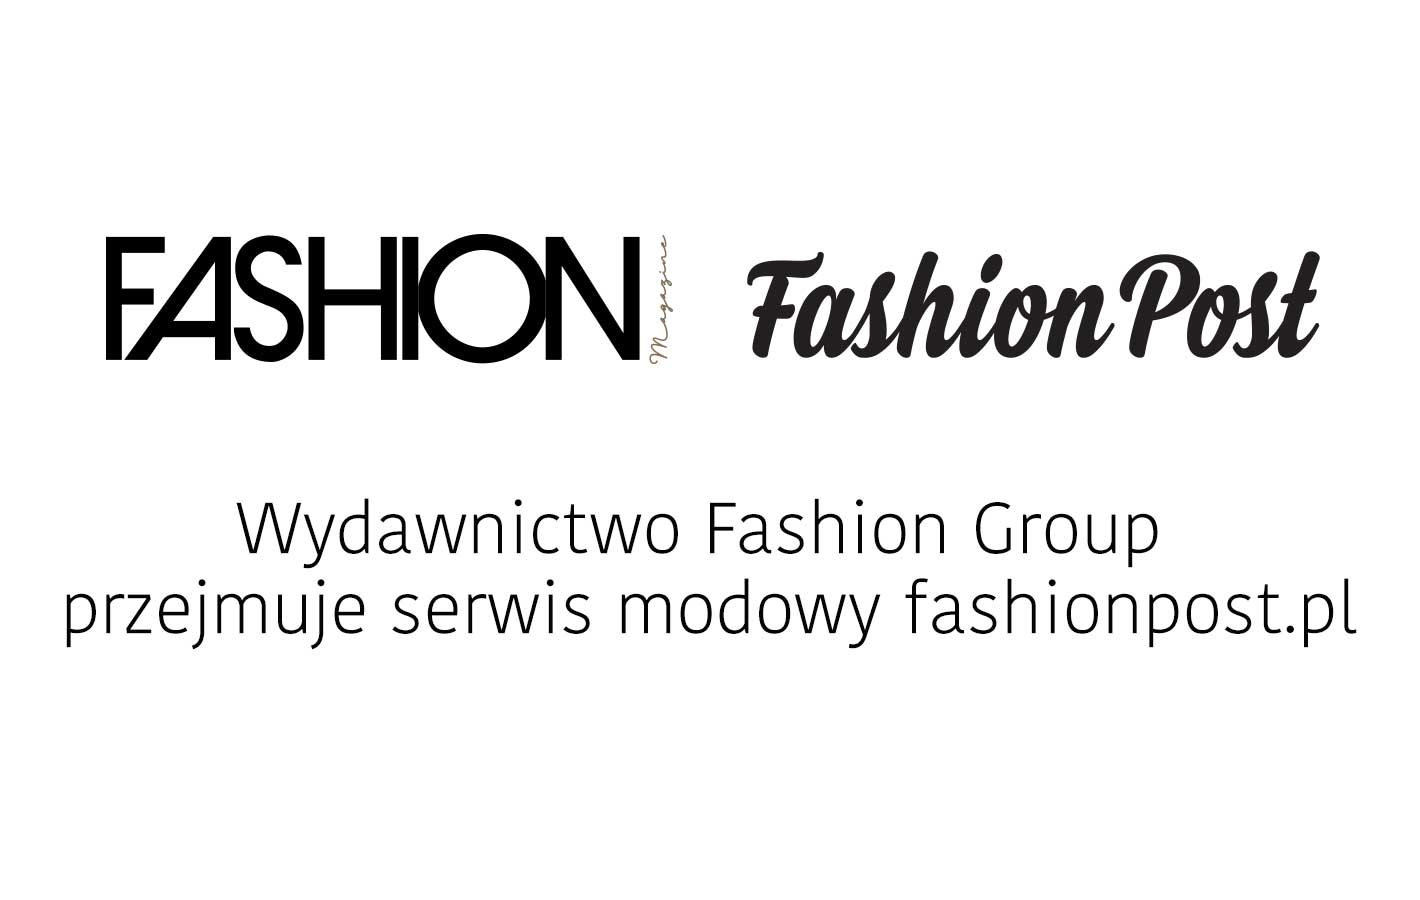 Wydawnictwo Fashion Group przejmuje serwis modowy Fashionpost.pl